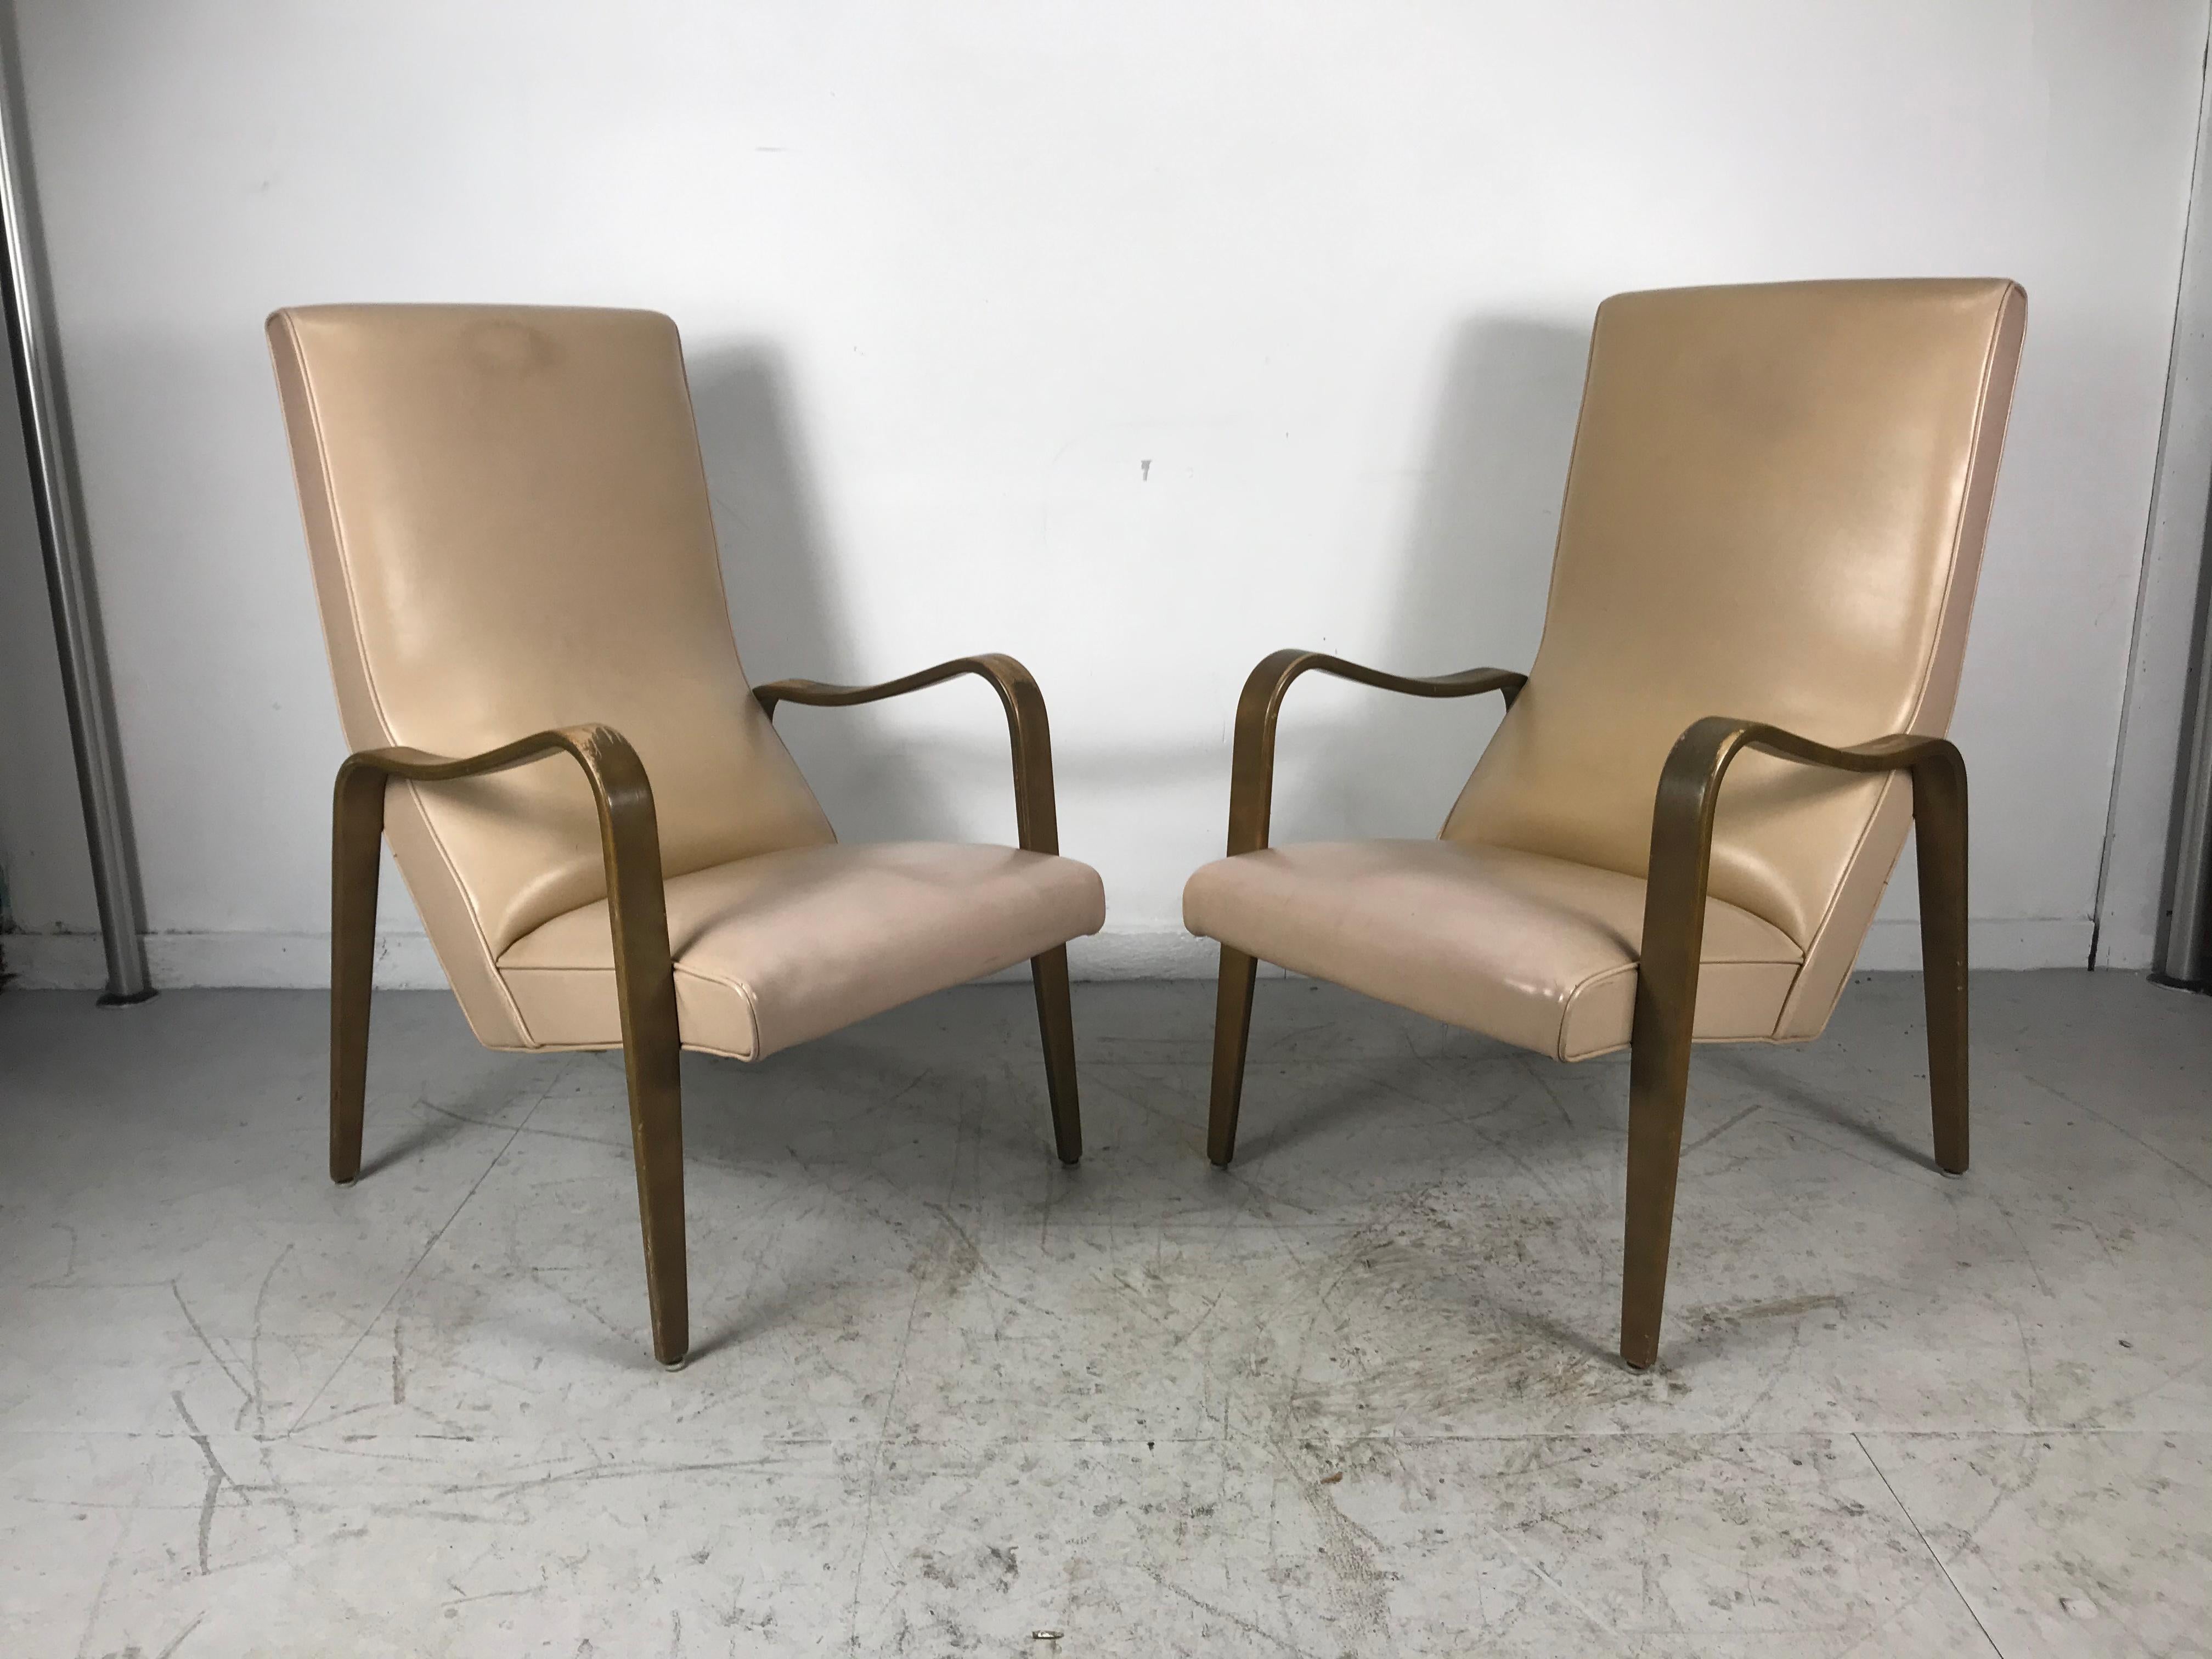 Paar der klassischen Mid-Century Modern Bugholz Lounge Stühle von Thonet, atemberaubende Linien, sehr komfortabel, seltene hohe Rückenlehne Version, behalten Original-Finish, gut abgenutzt zu beenden, so dass es bis zu den Käufern Ermessen,